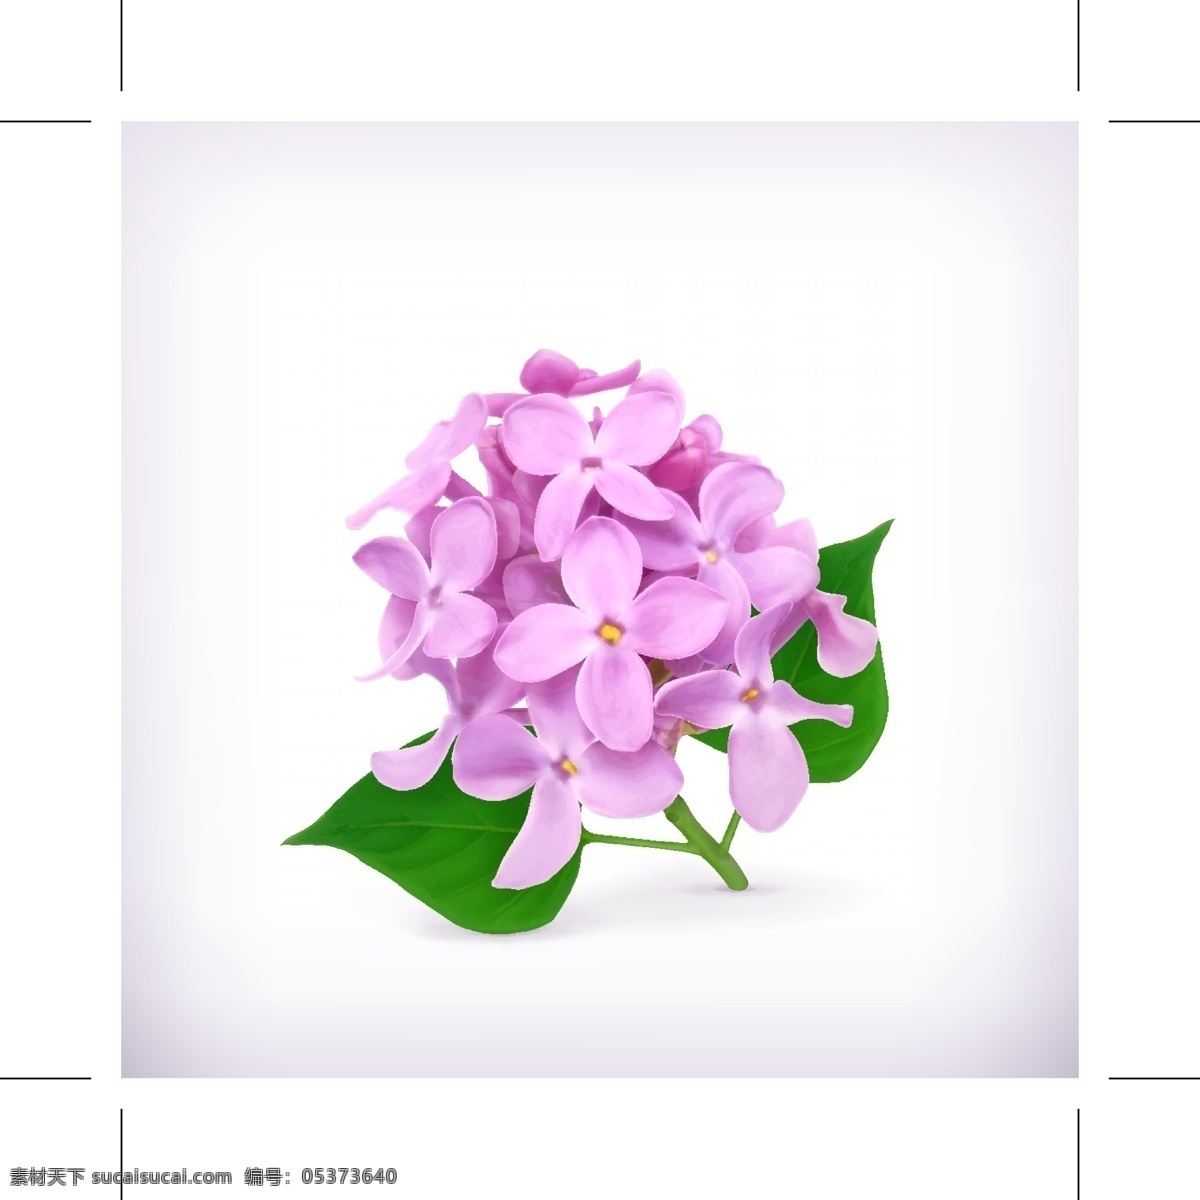 紫色绣球花 紫色 绣球花 花朵 鲜花 3d 立体 生活百科 矢量素材 白色